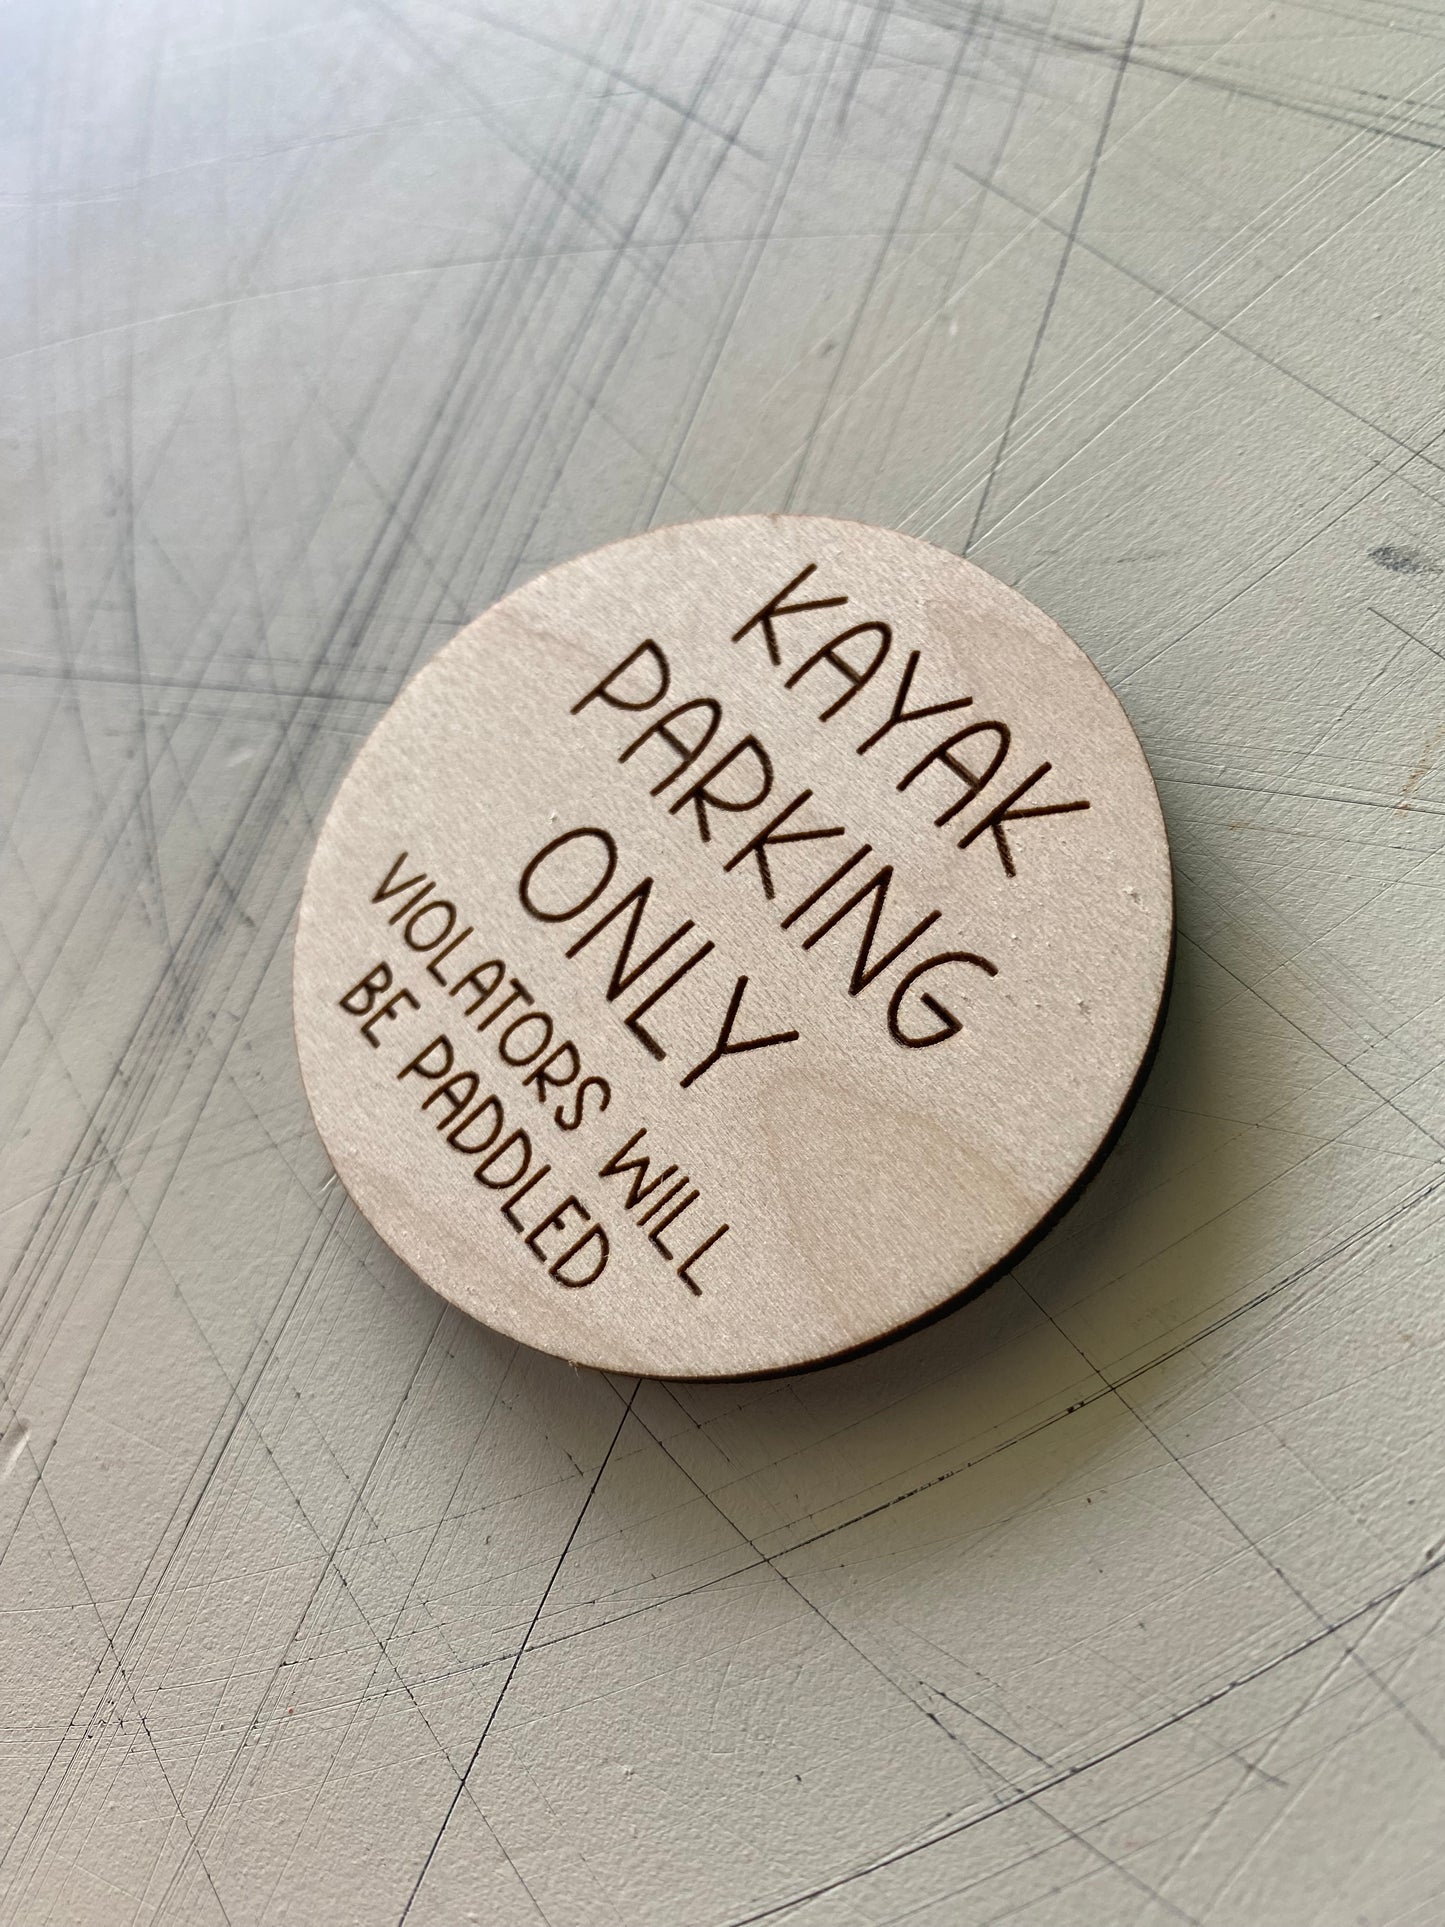 Kayak parking only - violators will be paddled - Novotny Designs engraved wood magnet